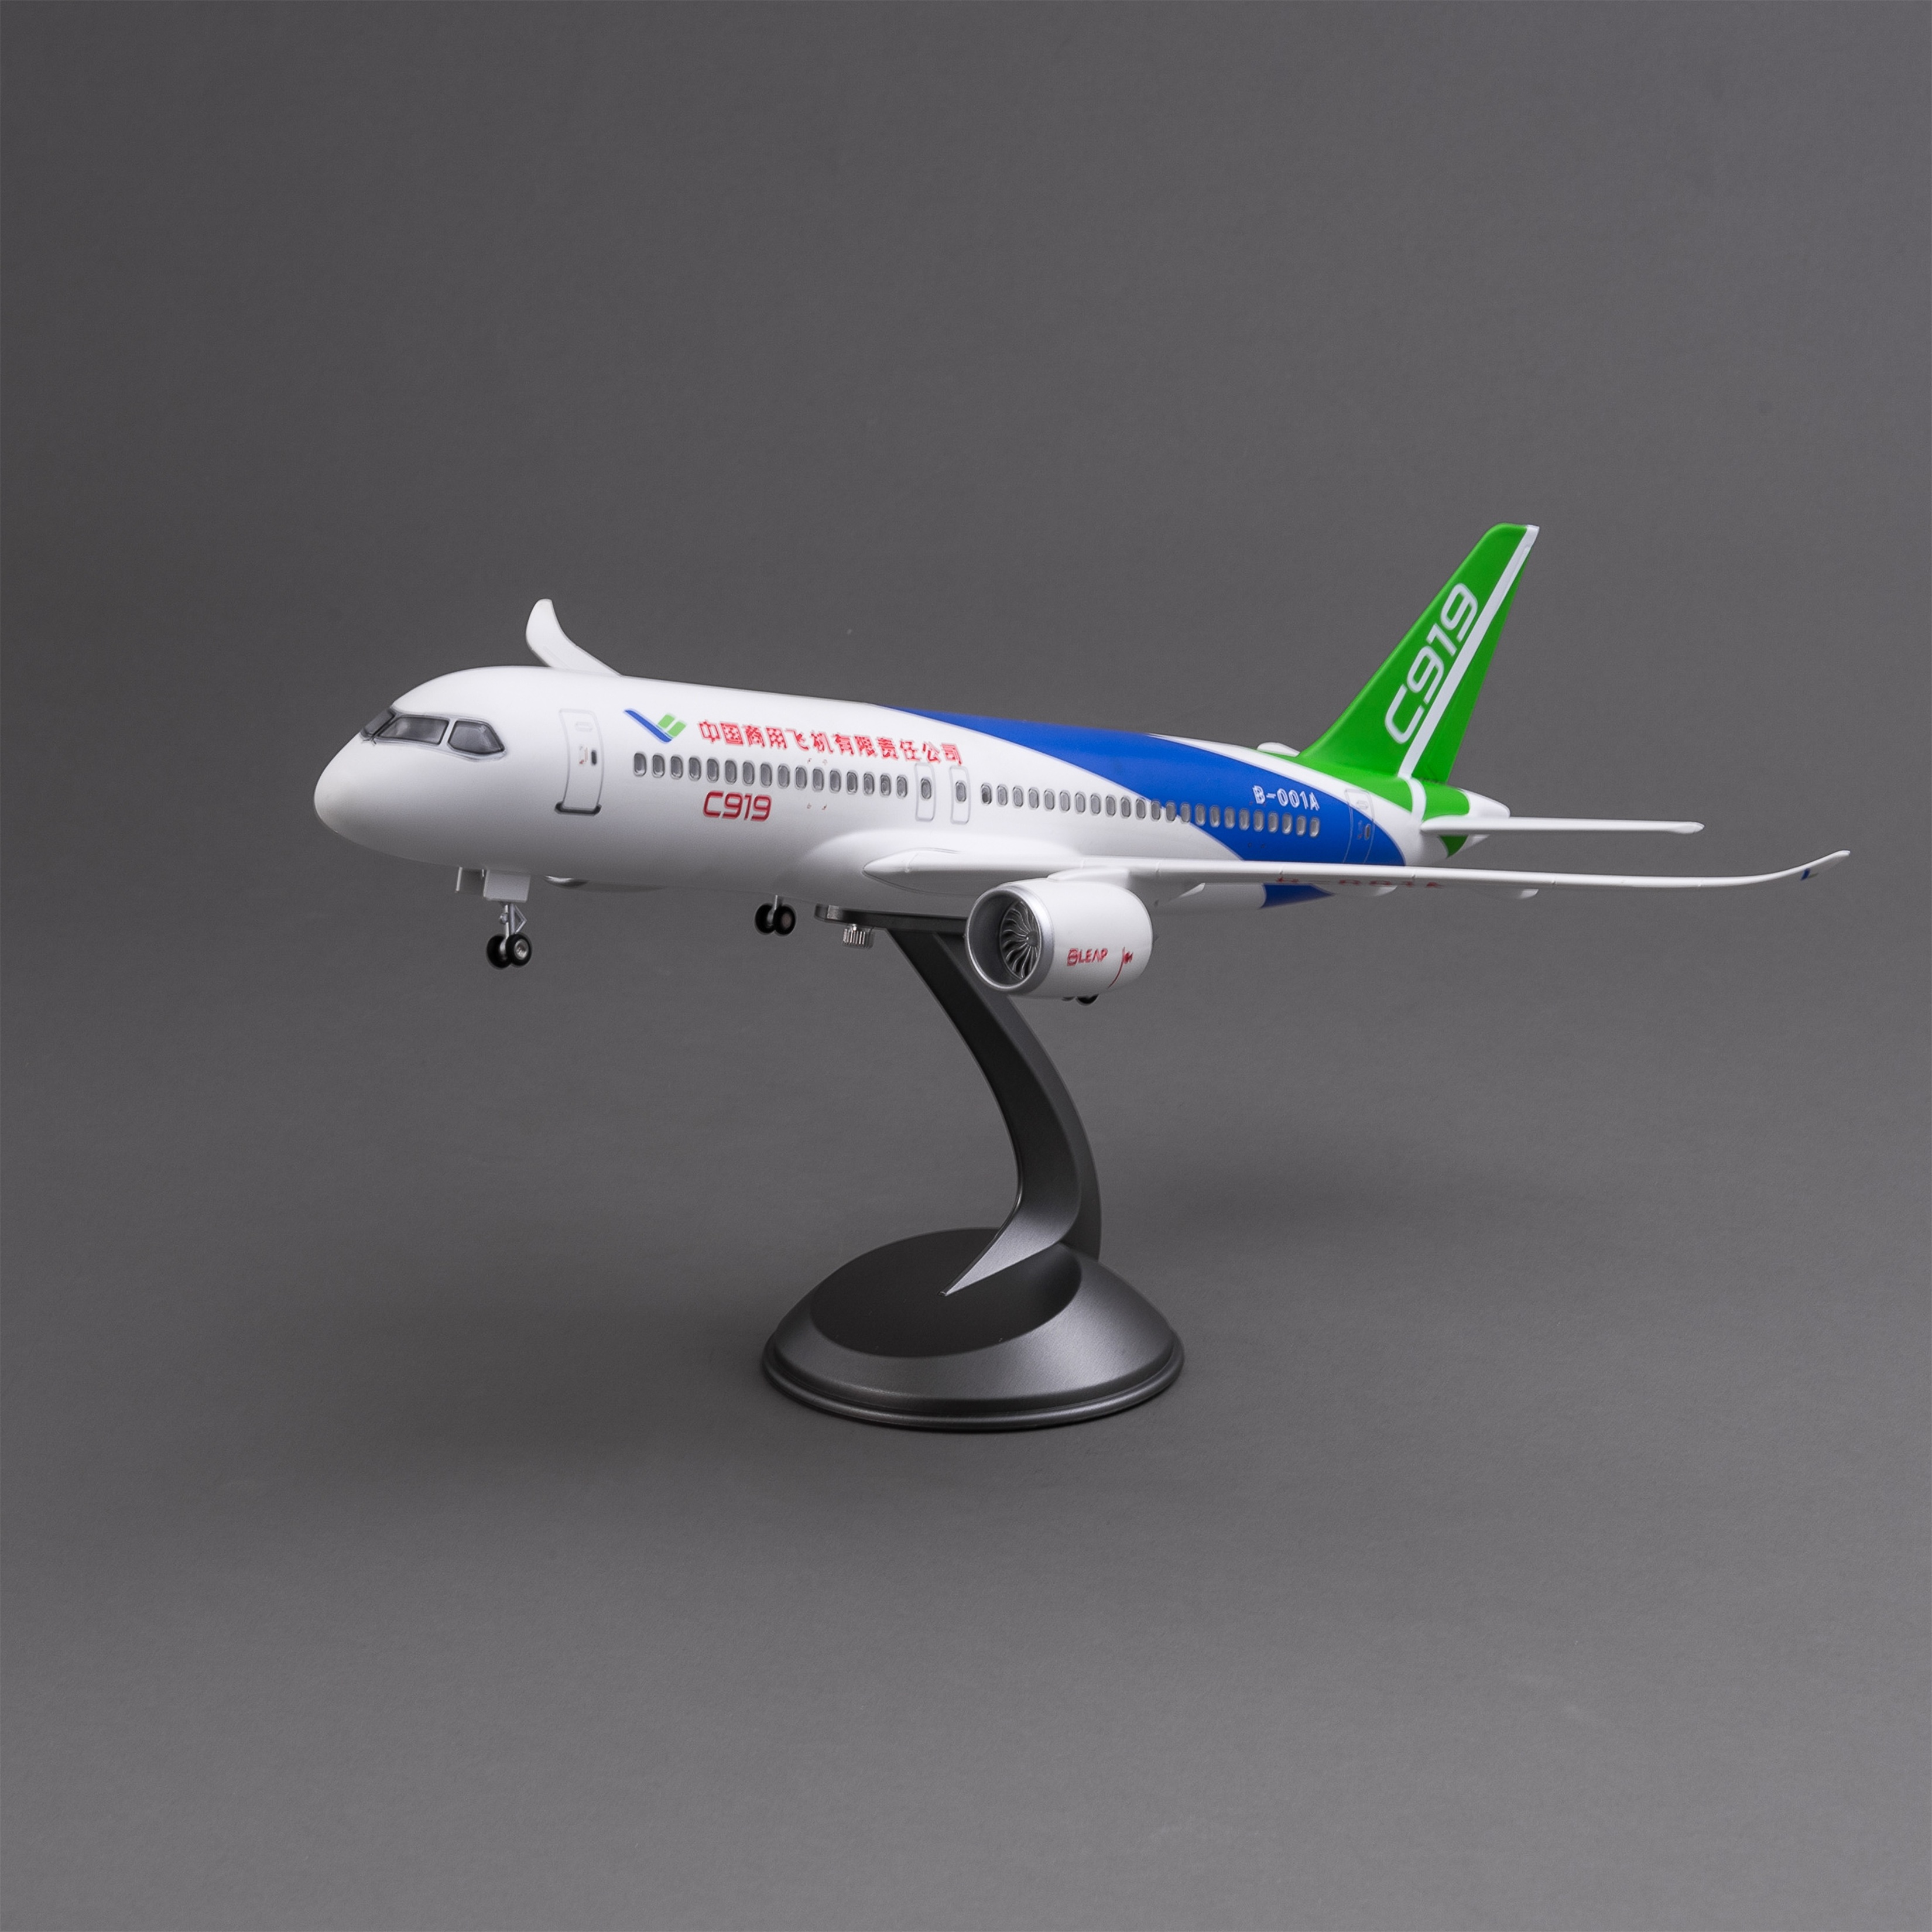 飞机模型/无人机/发光玩具/C919/泡沫飞机产品图